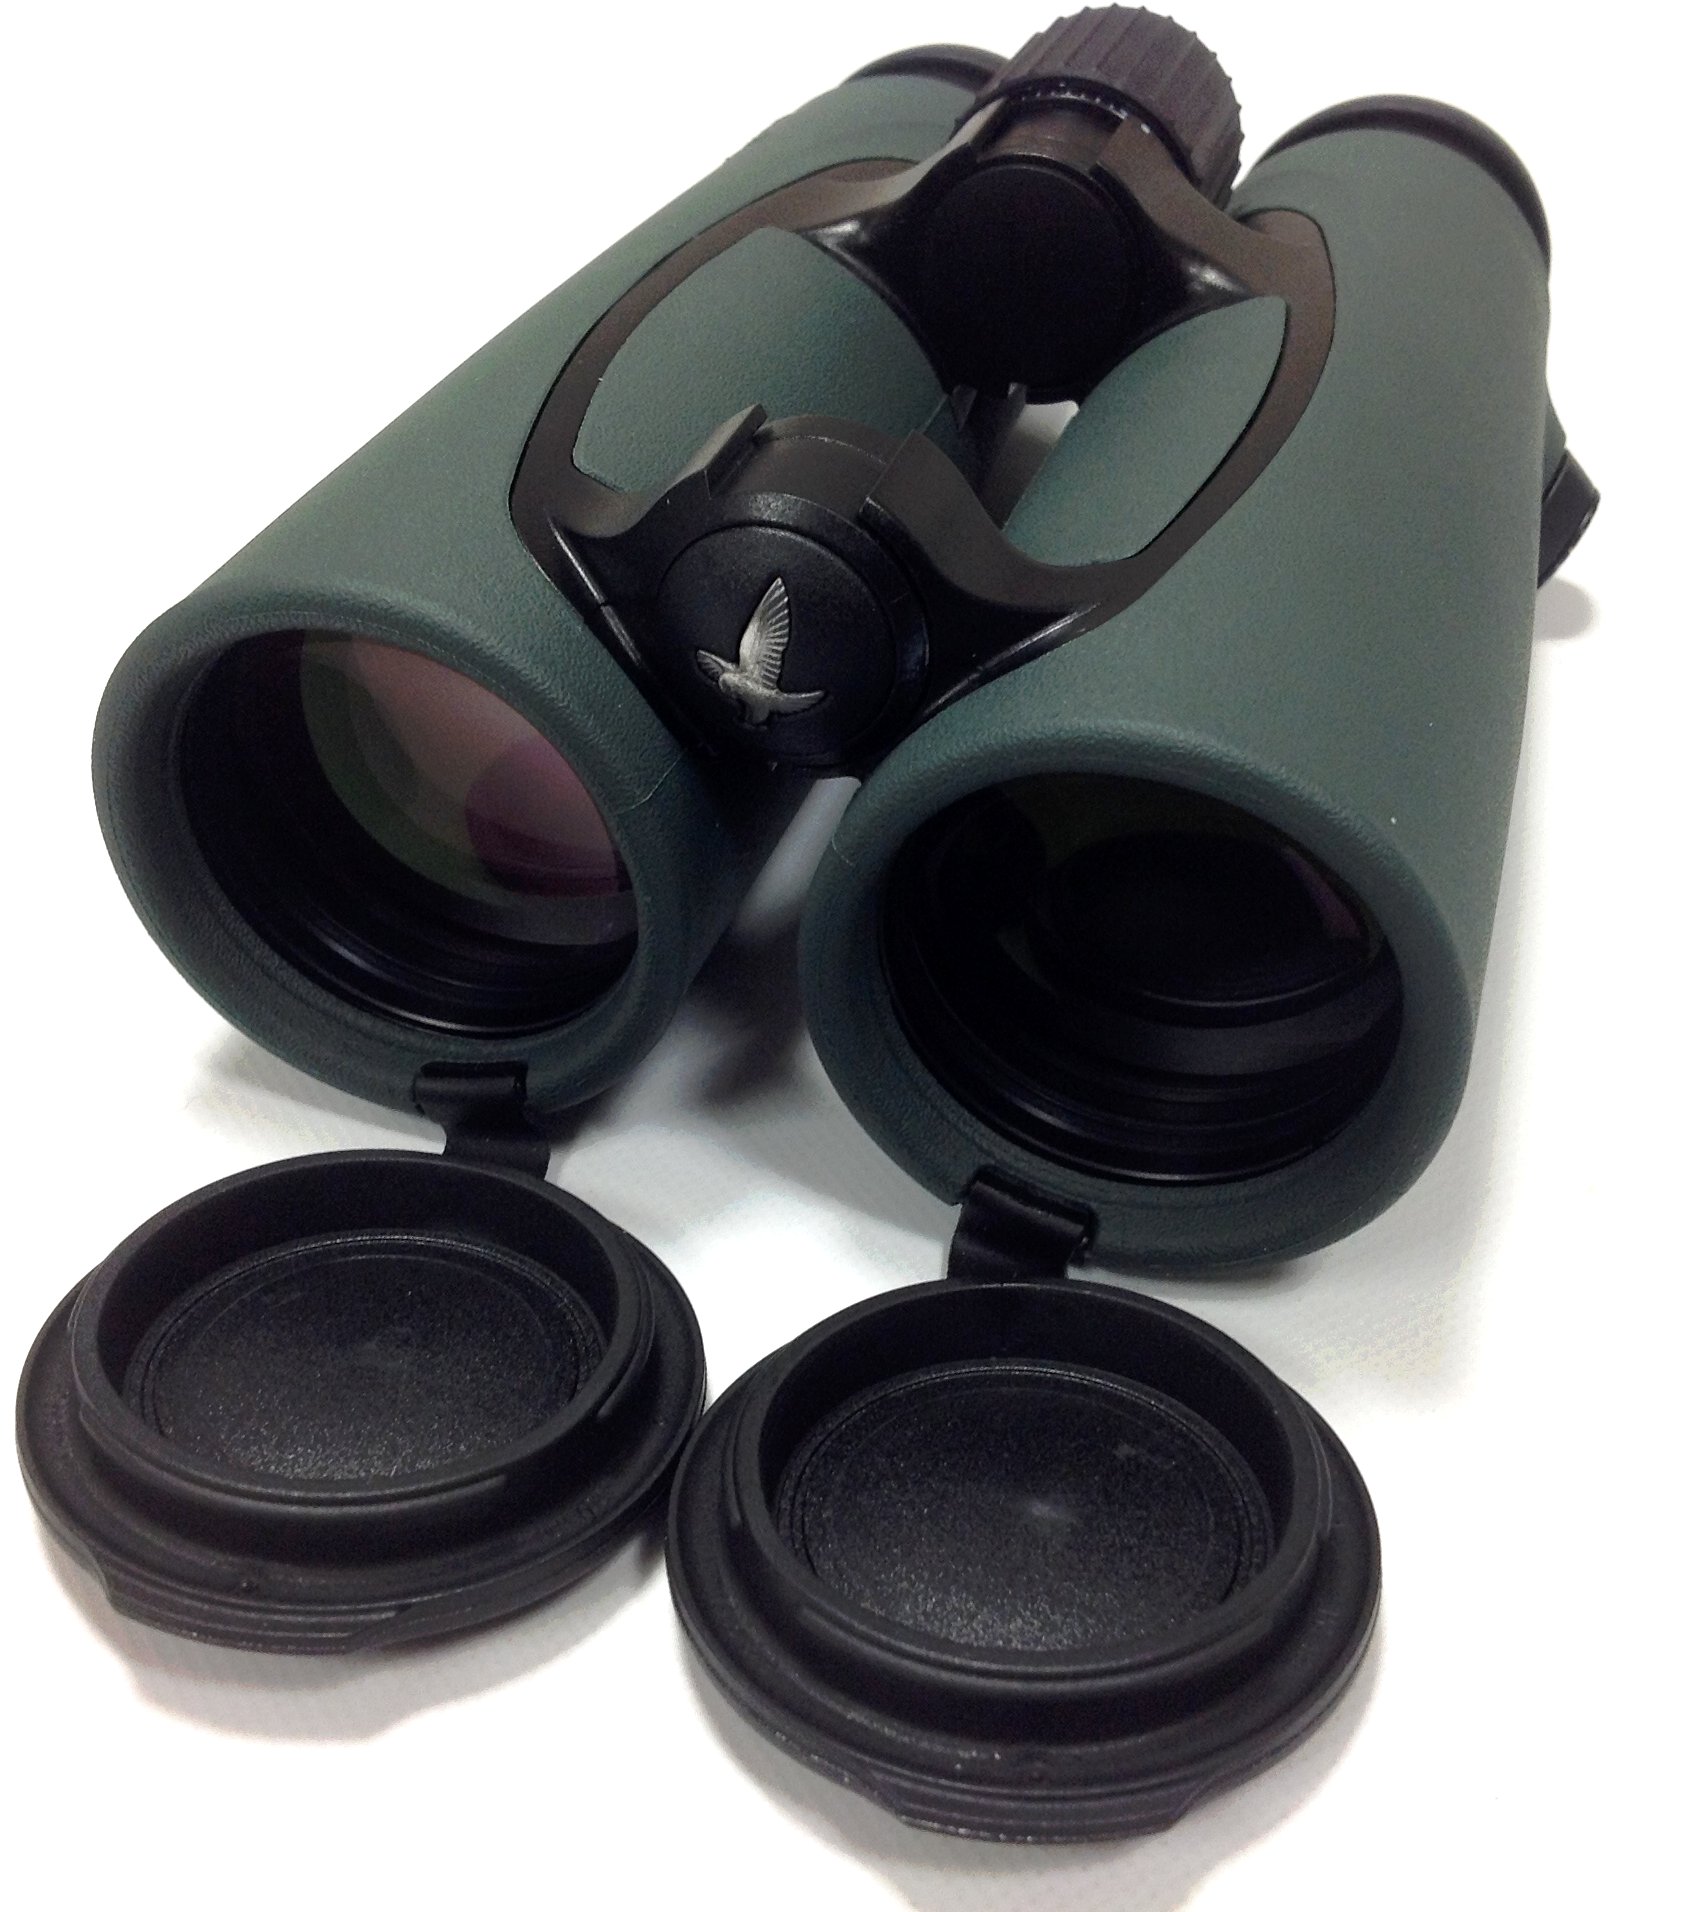 Swarovski 10x42 Binoculars